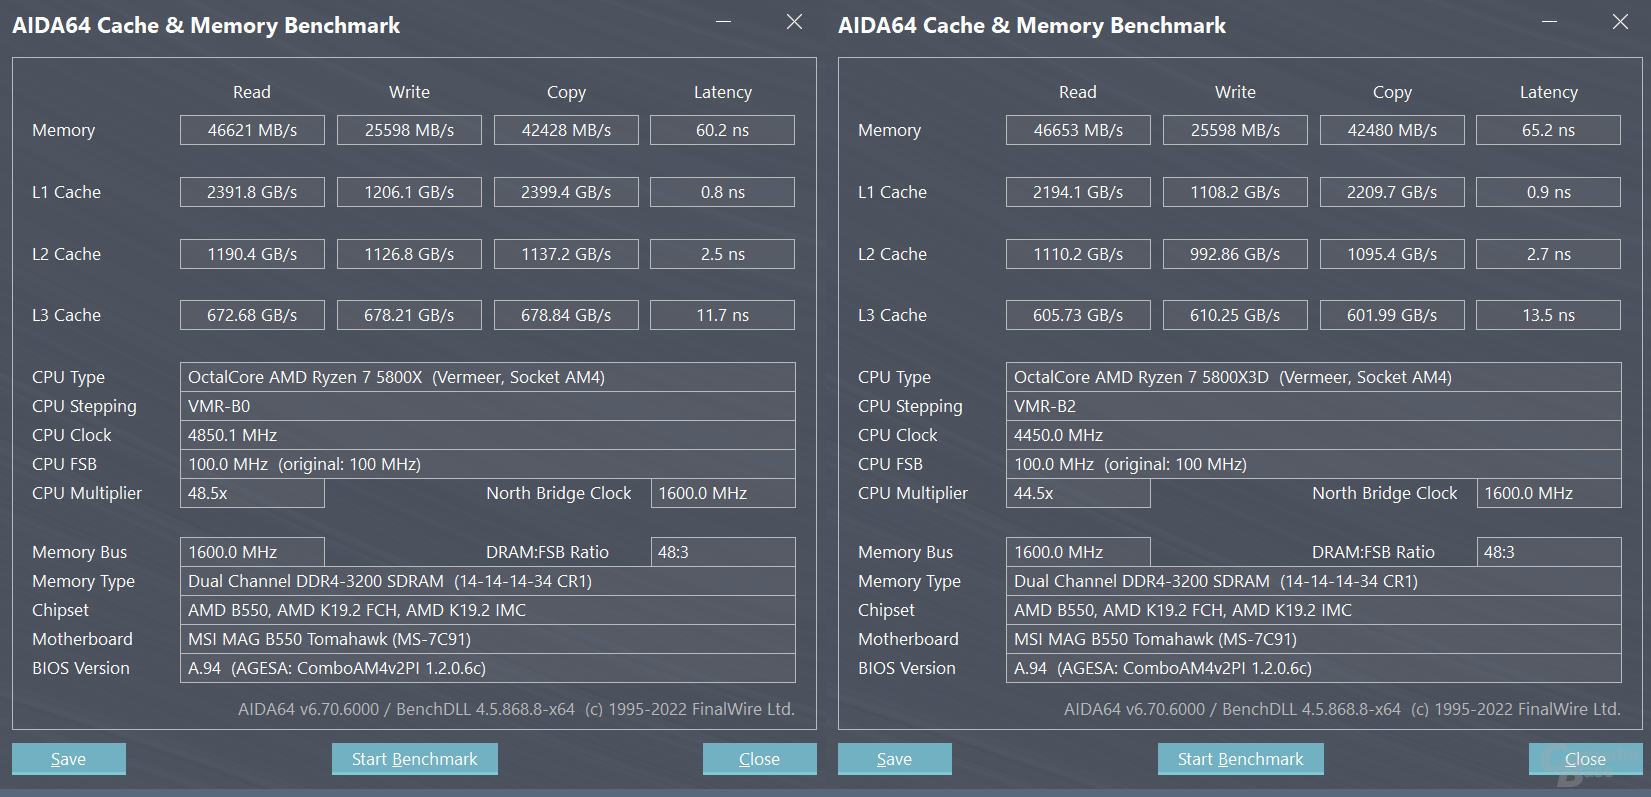 AMD Ryzen 7 5800X vs. AMD Ryzen 7 5800X3D